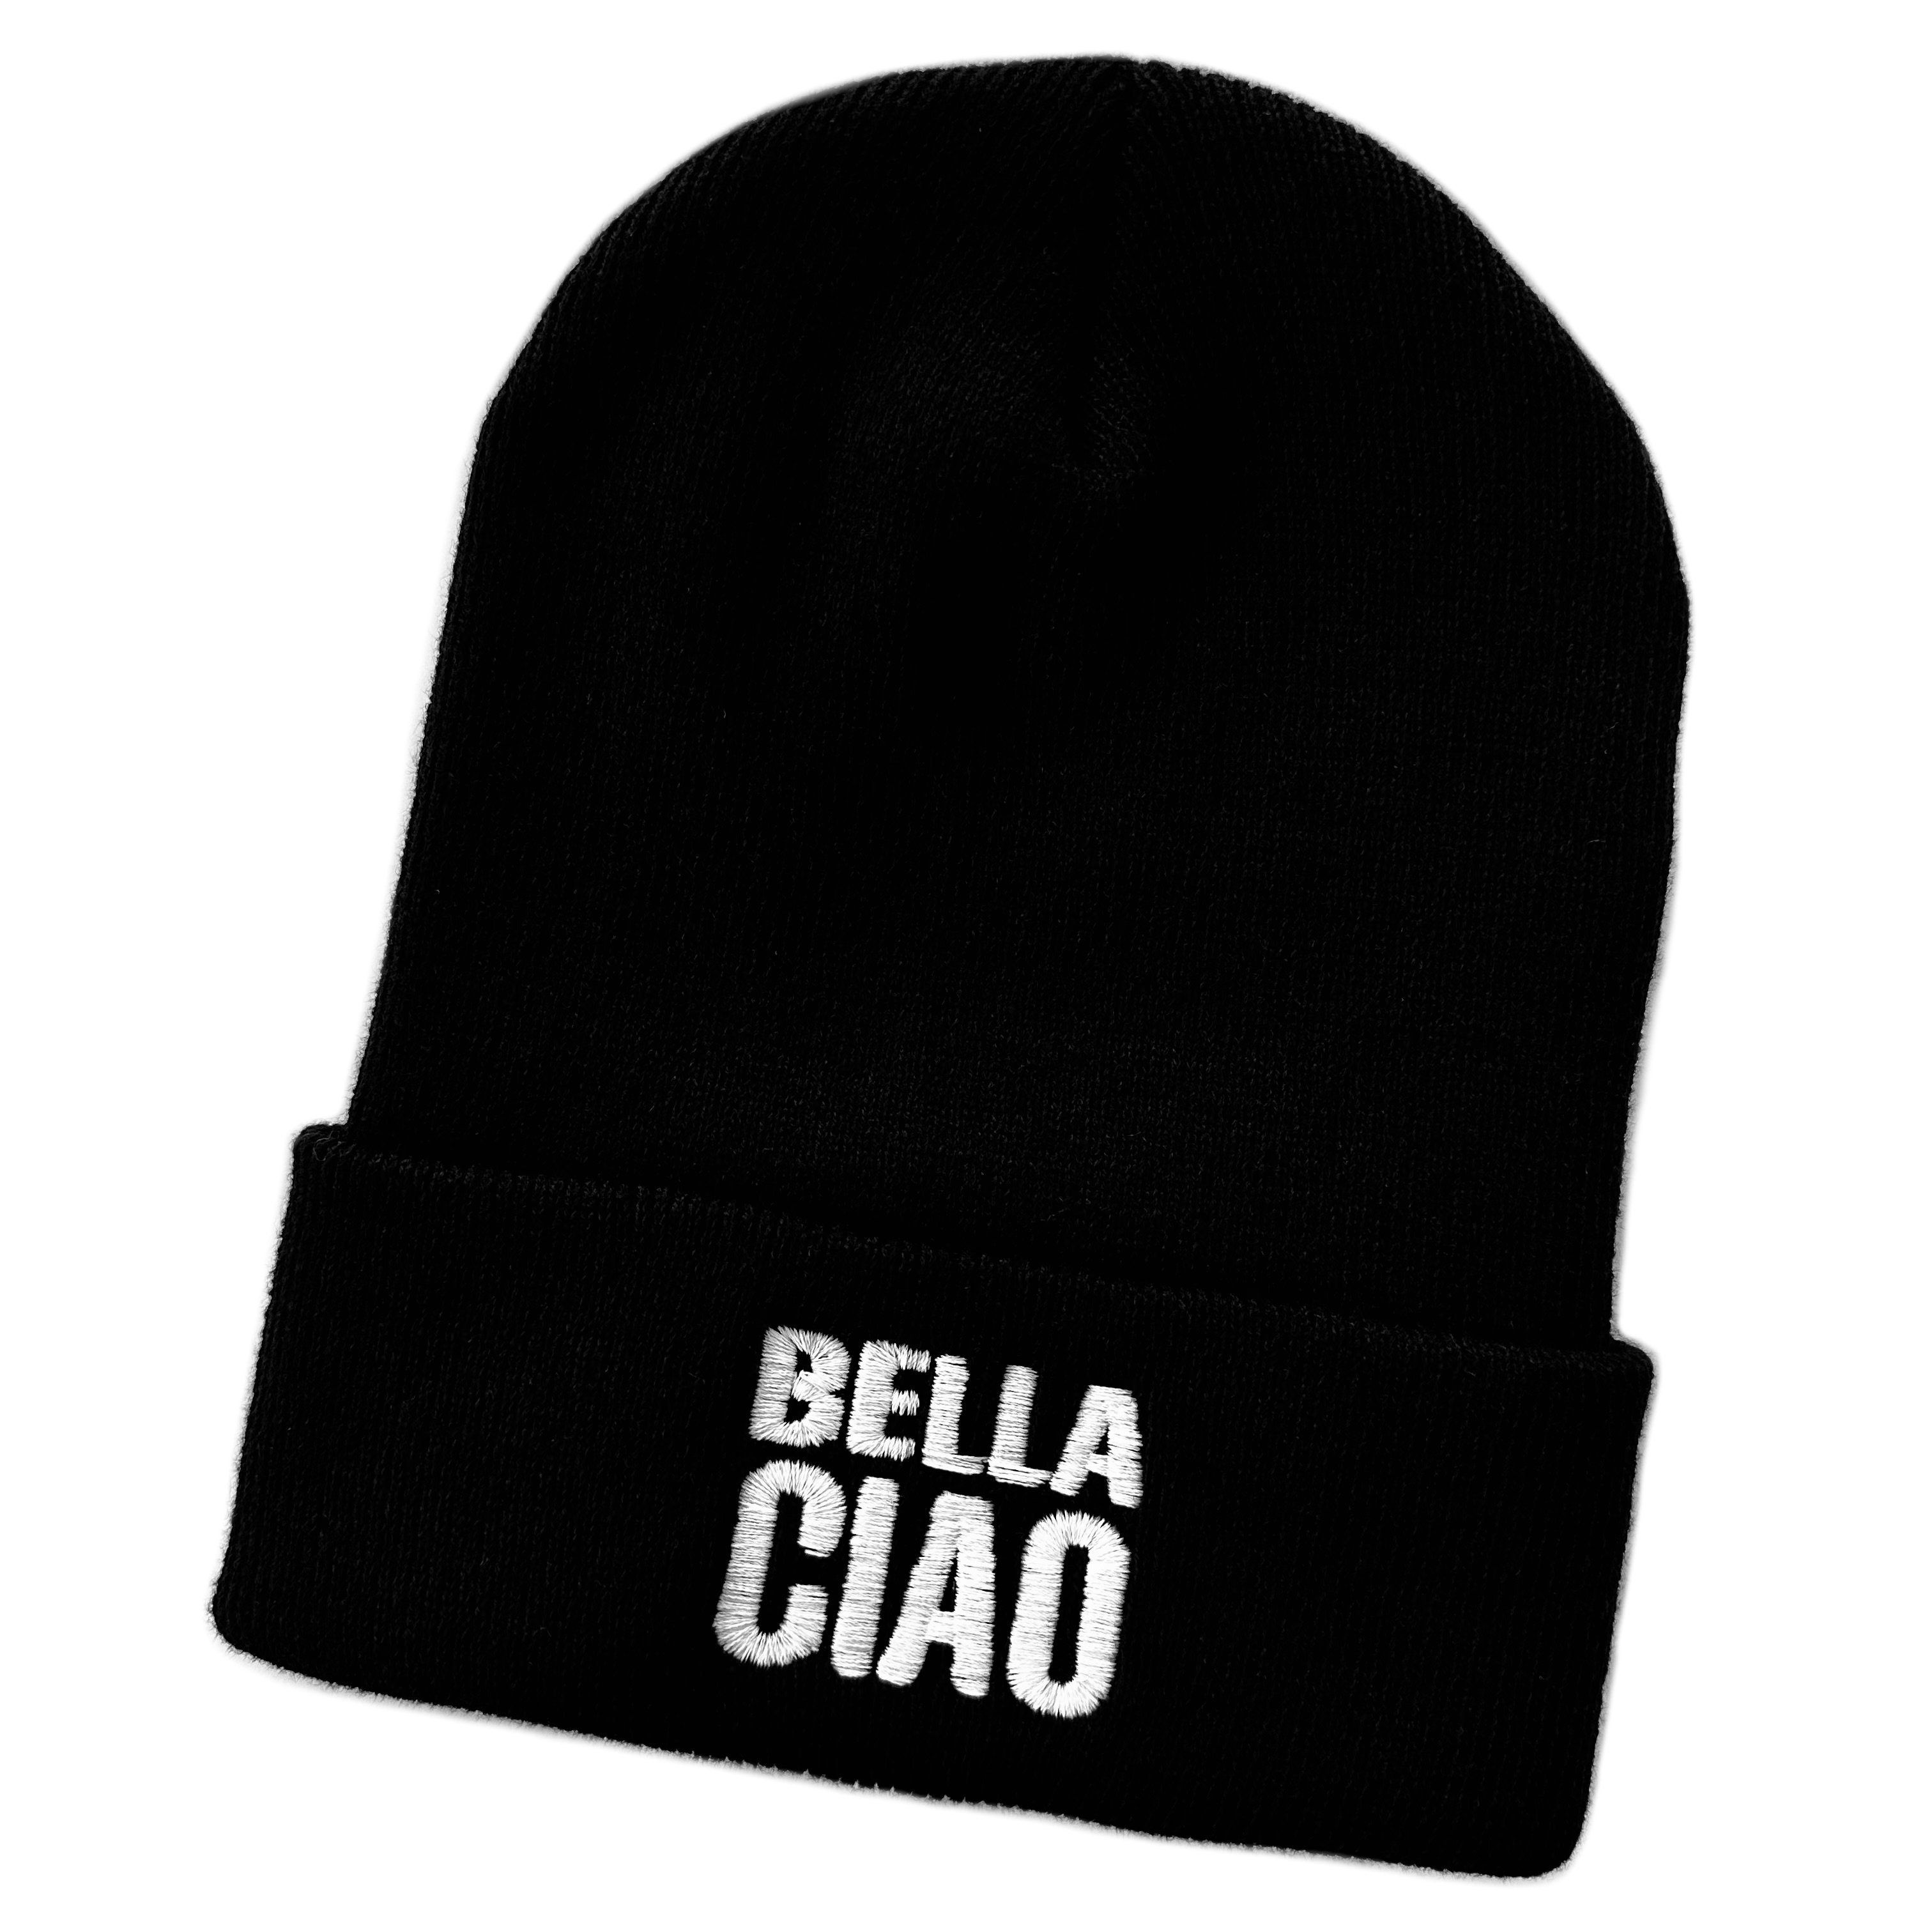 Schnoschi Strickmütze Wintermütze Bella Ciao (unisex) bestickt Statement Spruch Streetwear mit breitem Umschlag